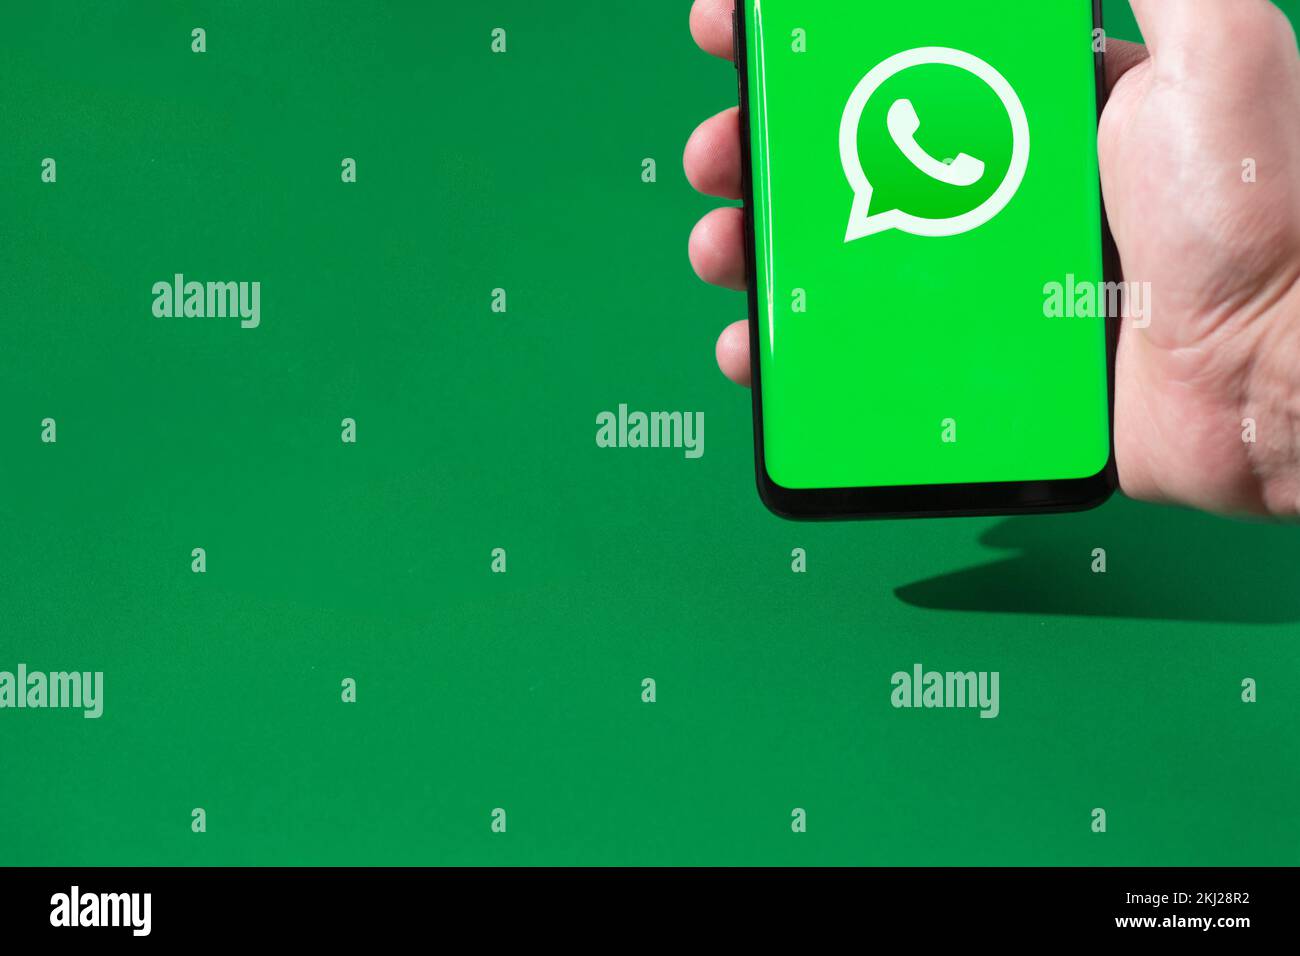 Persona que sostiene un smartphone con el logotipo de WhatsApp en la pantalla. Foto de stock